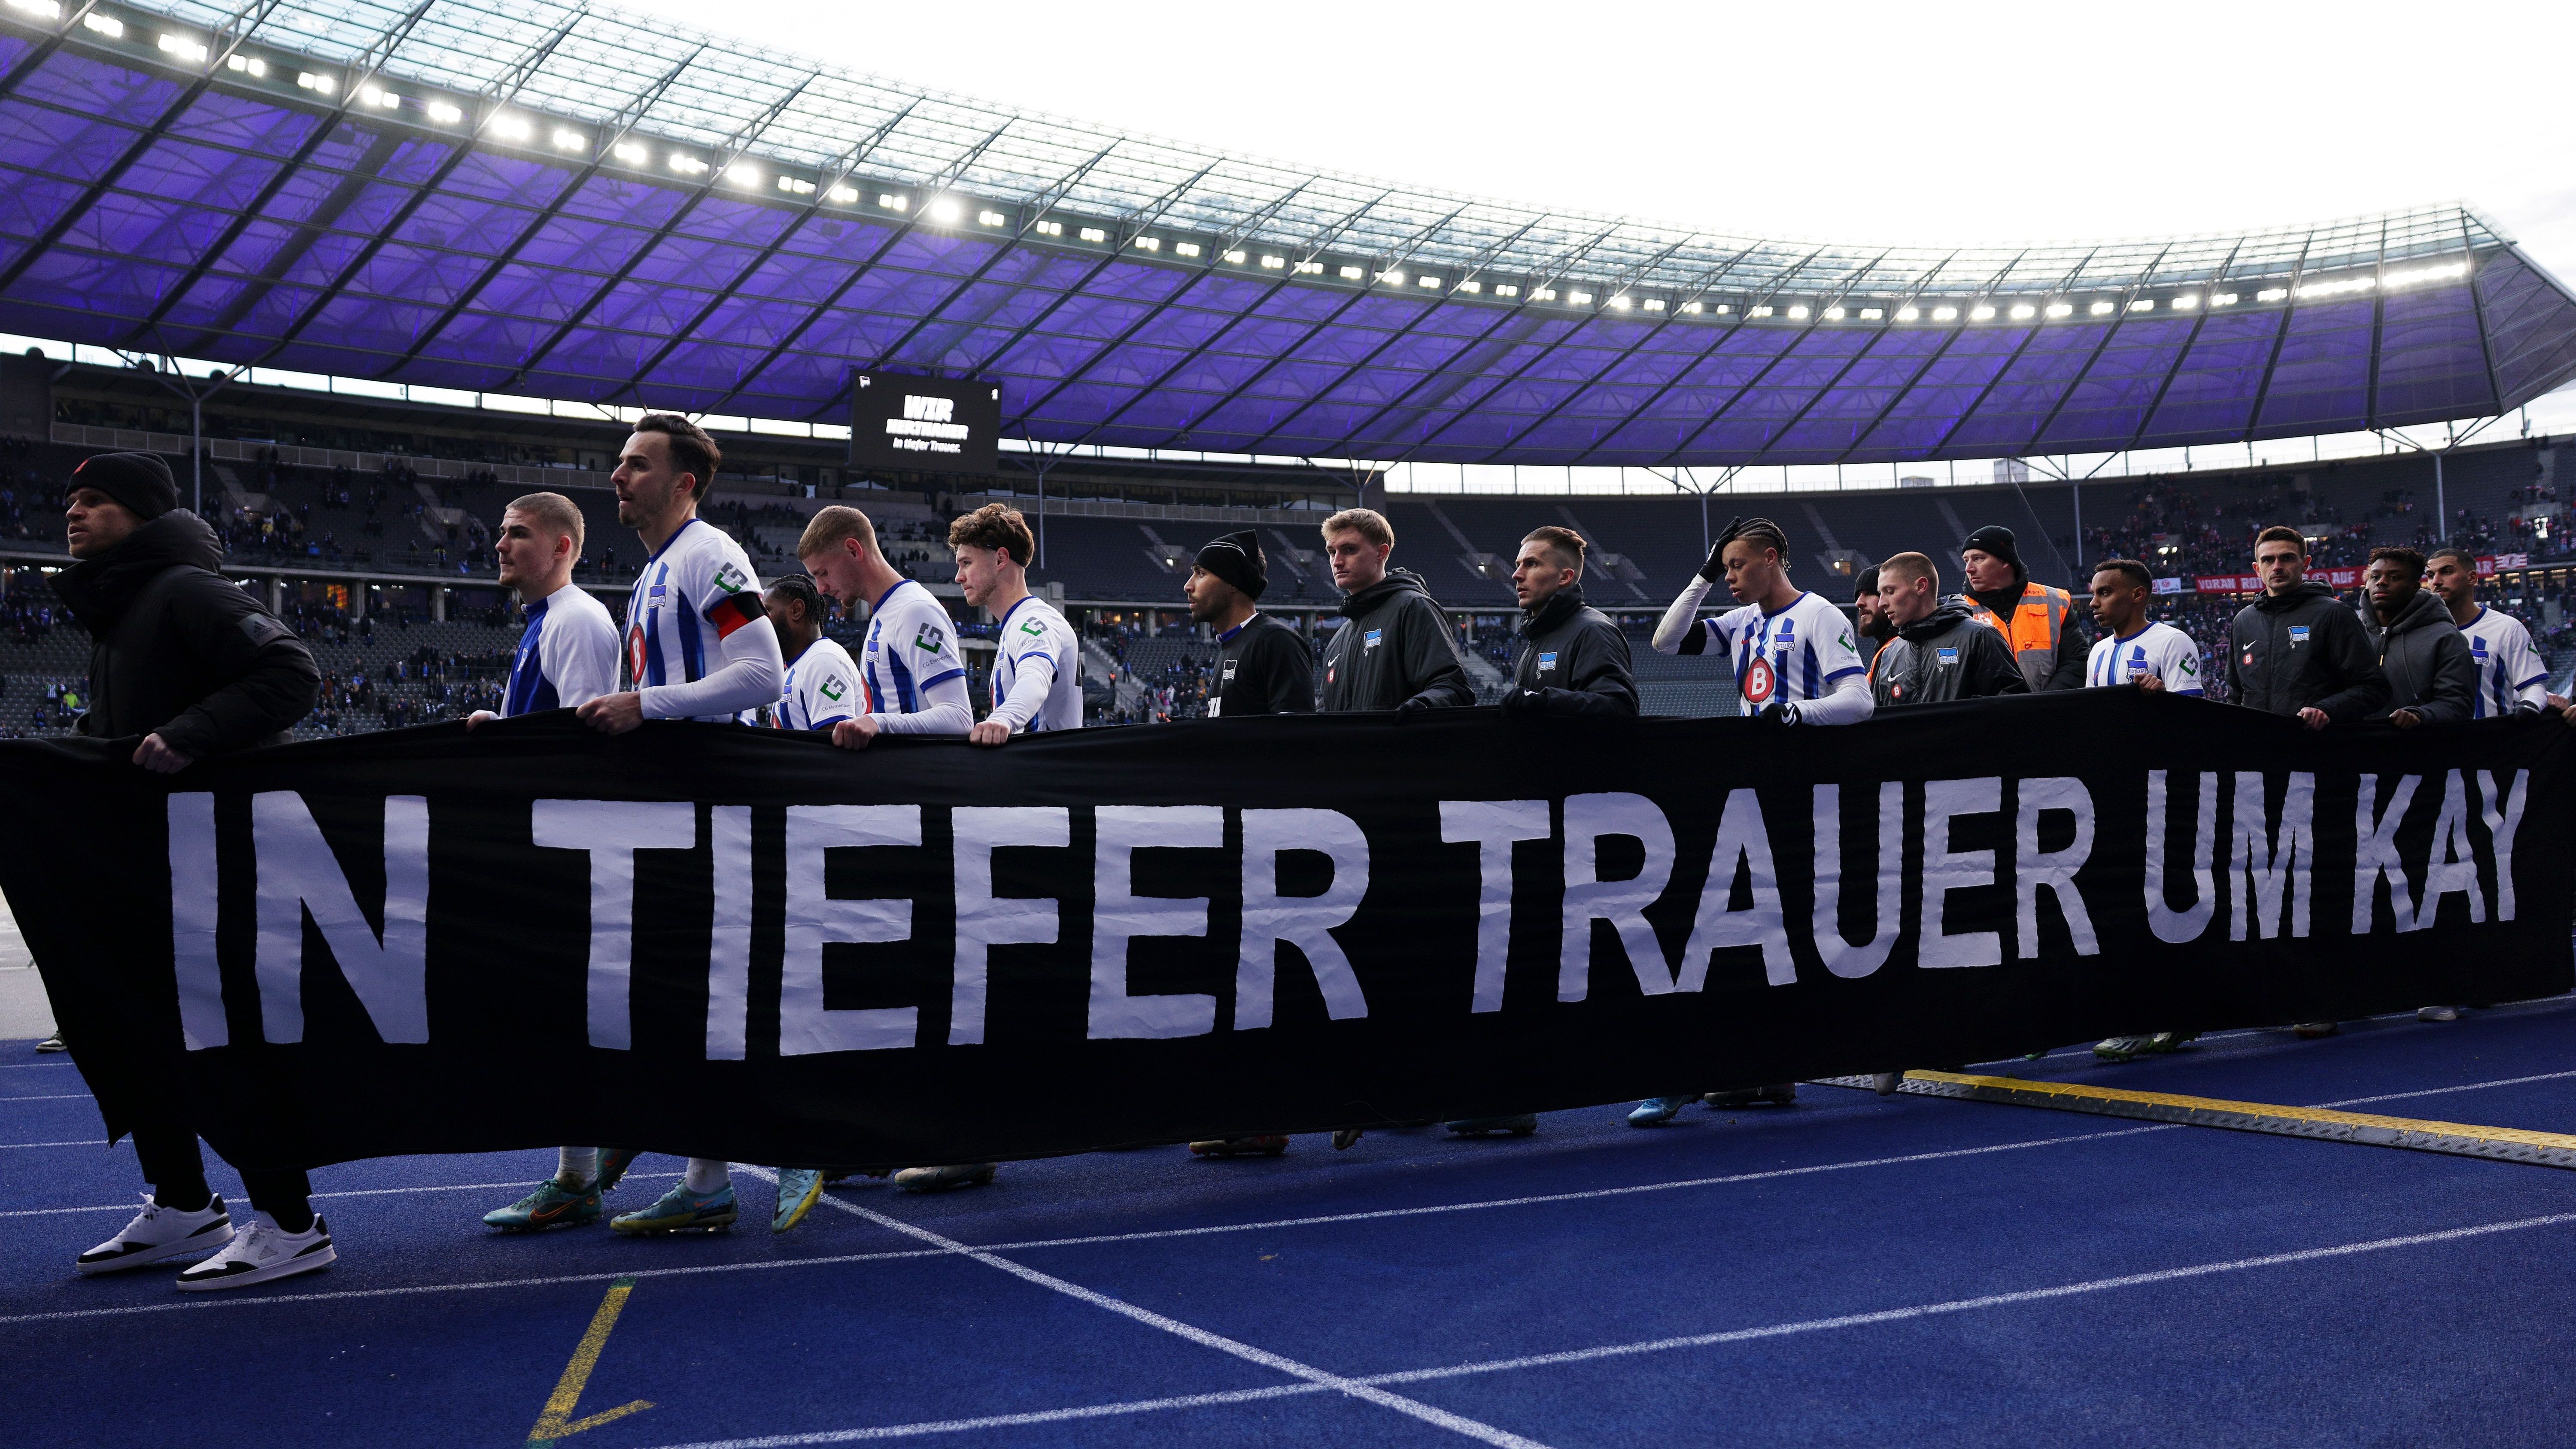 <strong>Spieler zeigen gewaltiges Banner nach Abpfiff<br></strong>Nach Abpfiff der Partie versammelten sich die Hertha-Profis dann noch hinter einem riesigen Banner mit der Aufschrift "In tiefer Trauer um Kay" und drehten damit eine Runde durch das Olympiastadion.